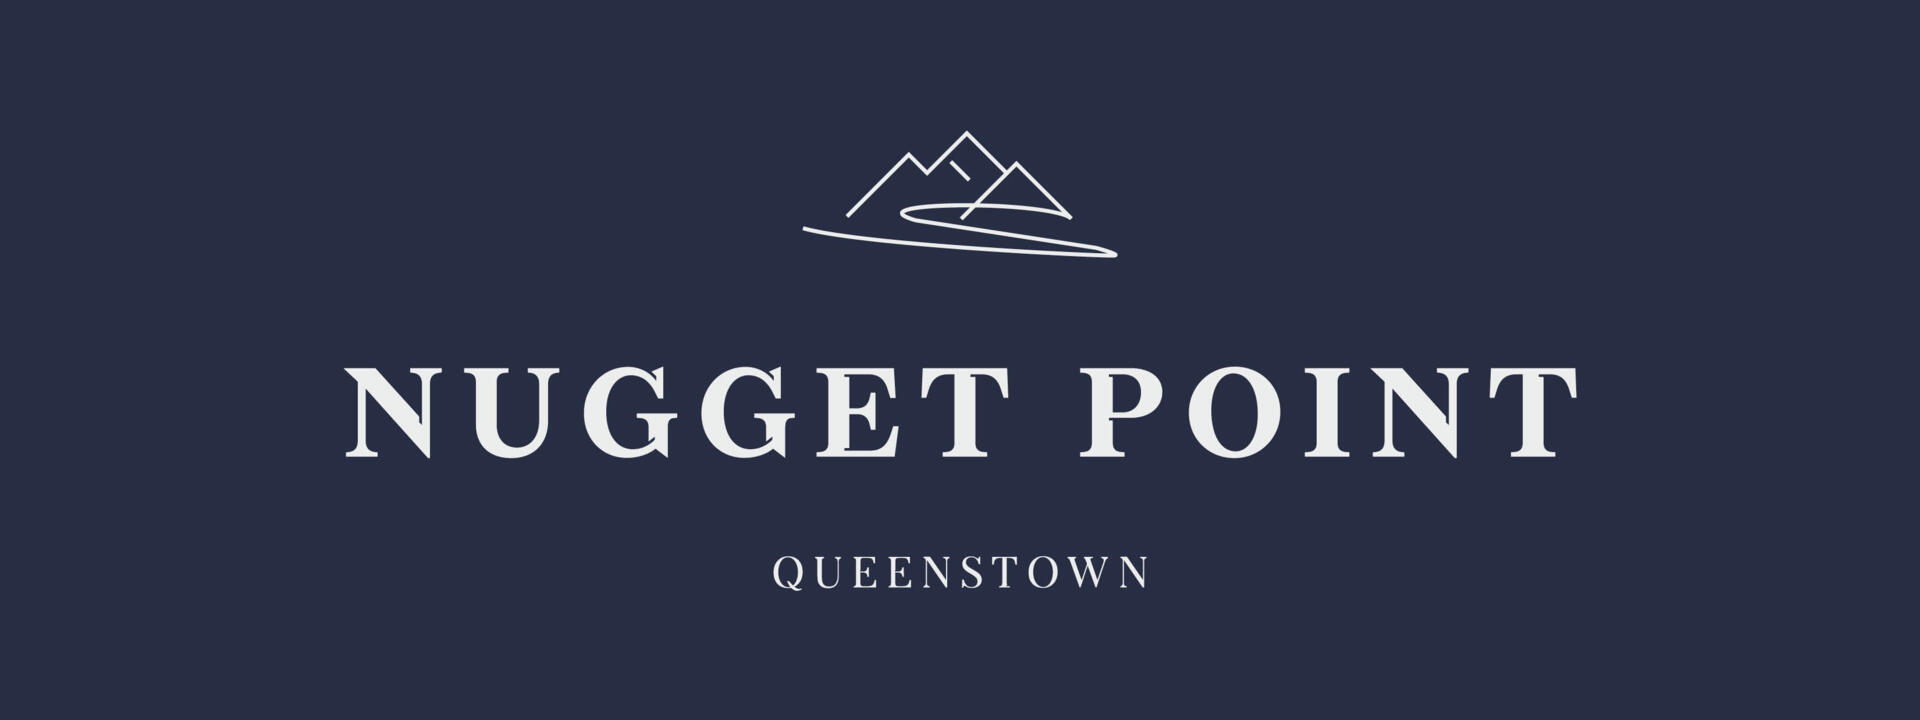 24281 NPQ Nugget Point Queenstown - Sep23 Reversed_0.jpg